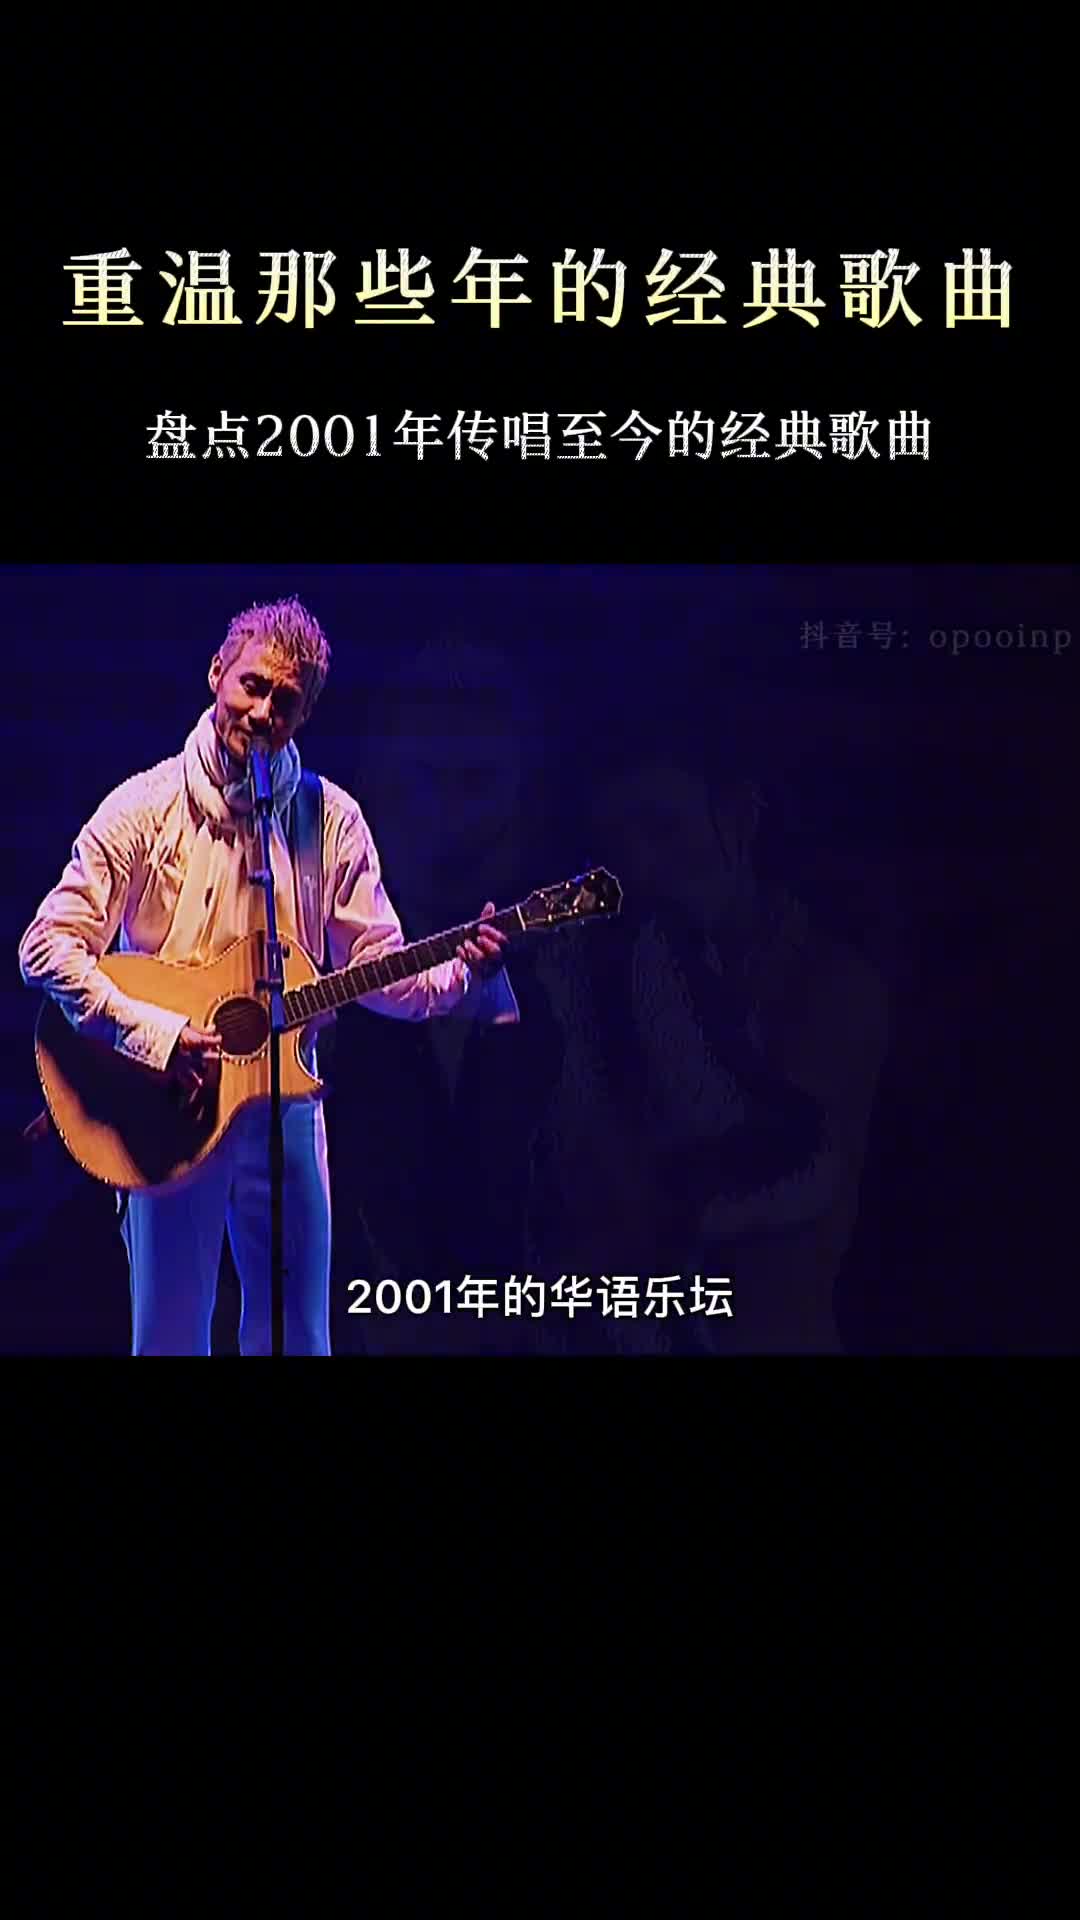 回顾2001年的华语乐坛，全程都能跟着哼唱 #经典老歌 #怀旧经典